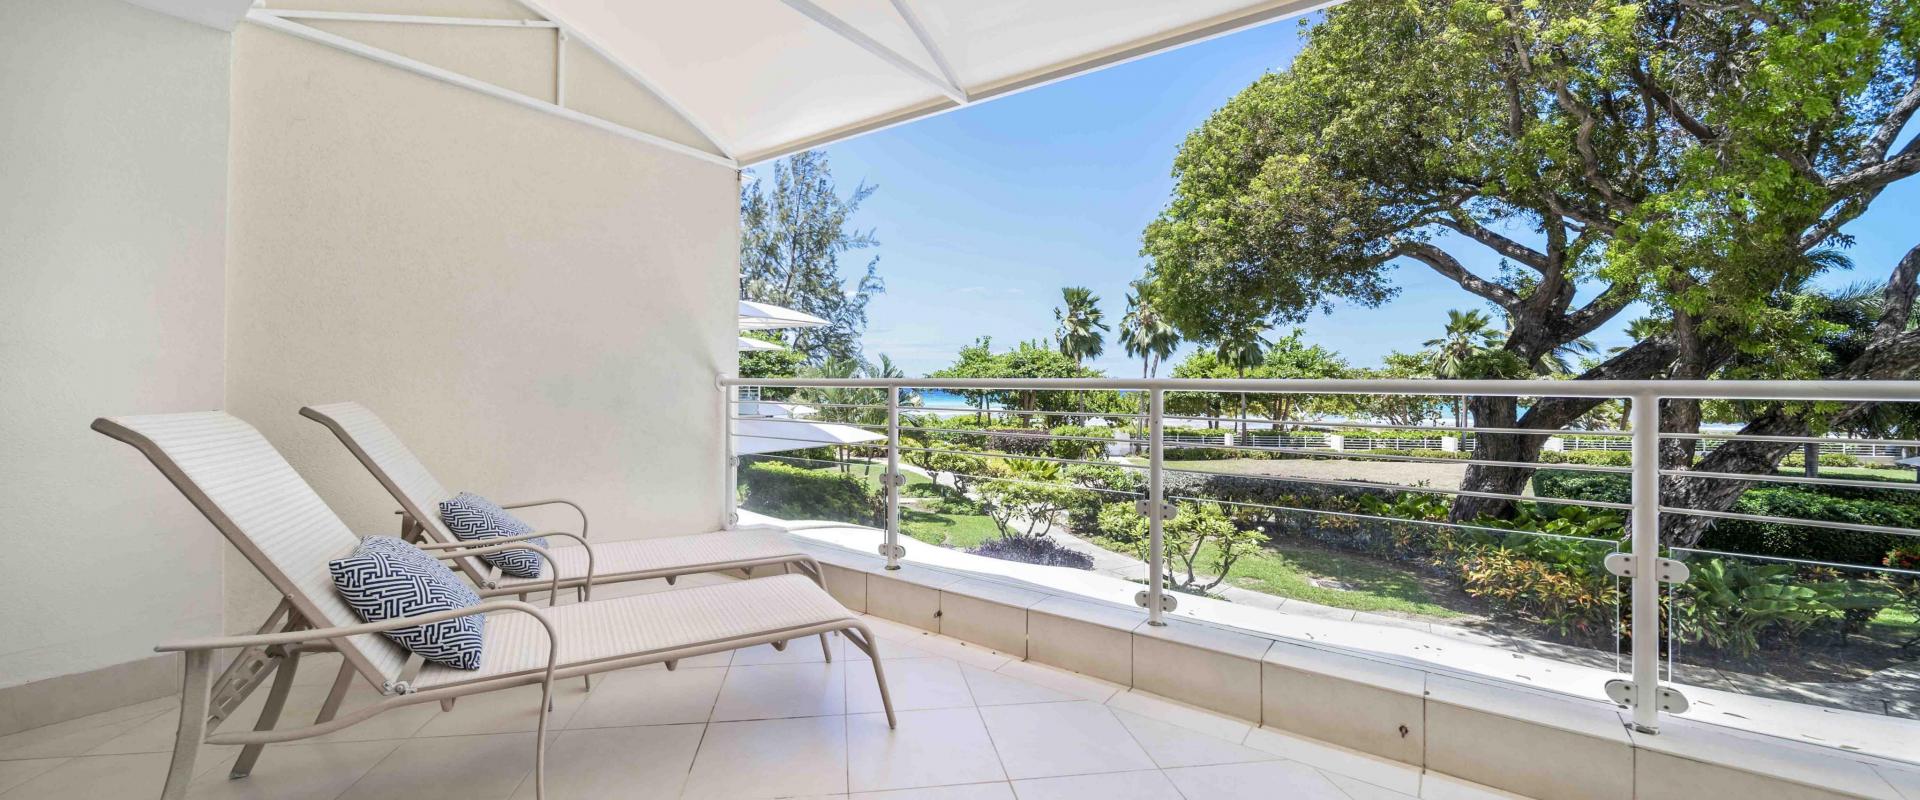 Palm Beach 204 Barbados Beachfront Condo Rental Sun Lounger On Patio